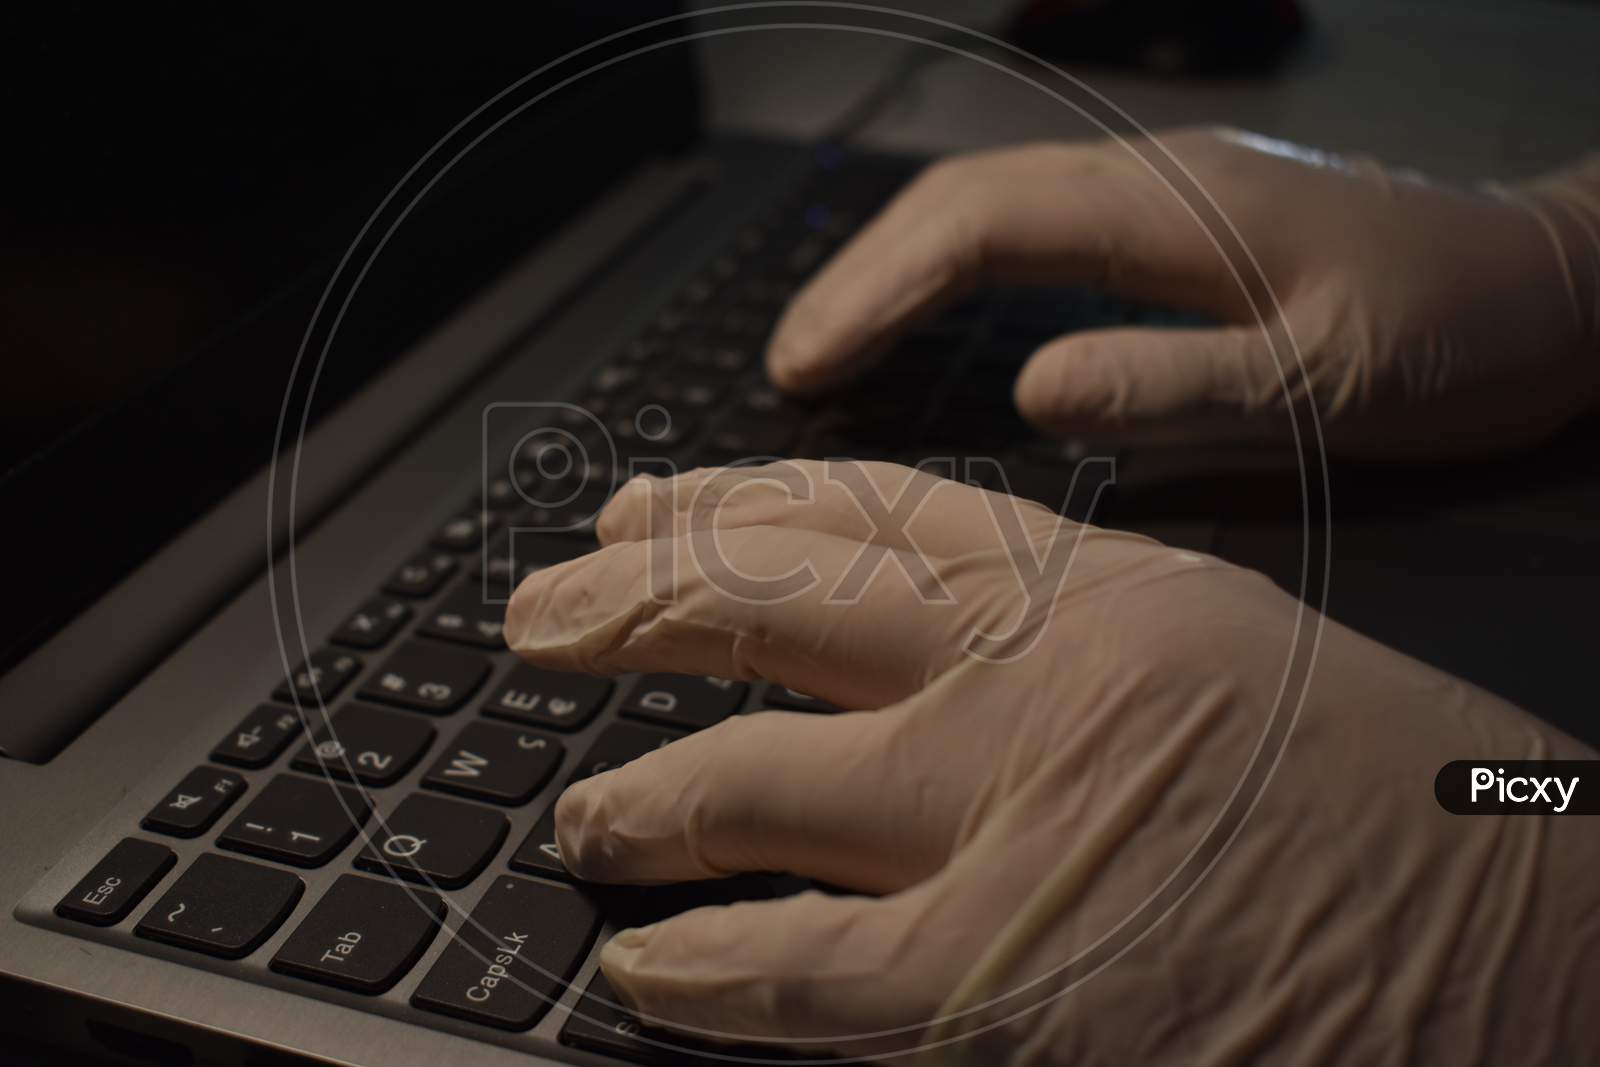 Hands in medical gloves on laptop